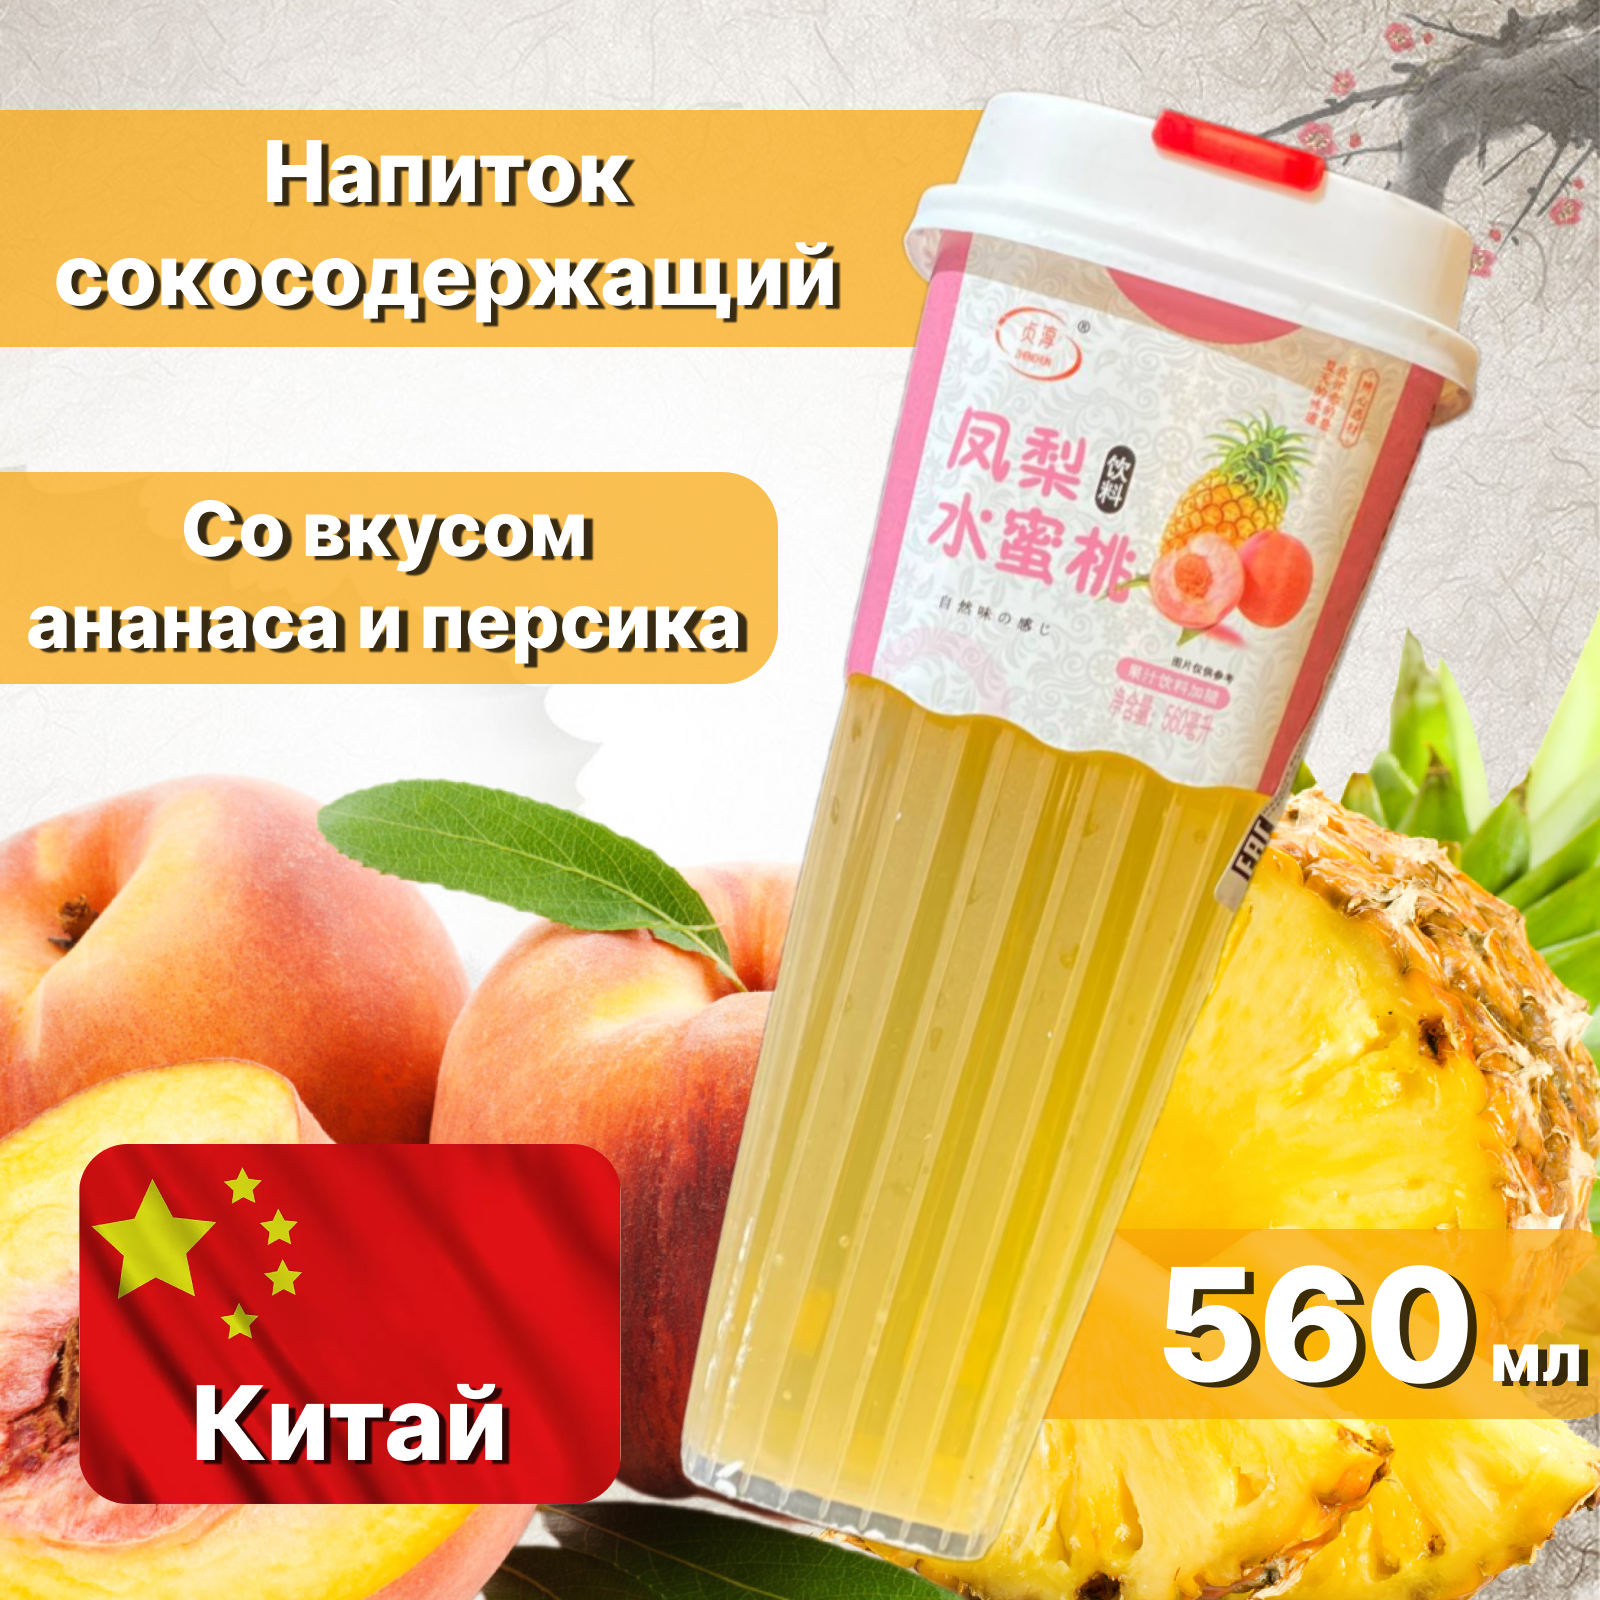 Напиток сокосодержащий со вкусом ананаса и персика, 560 мл, Китай